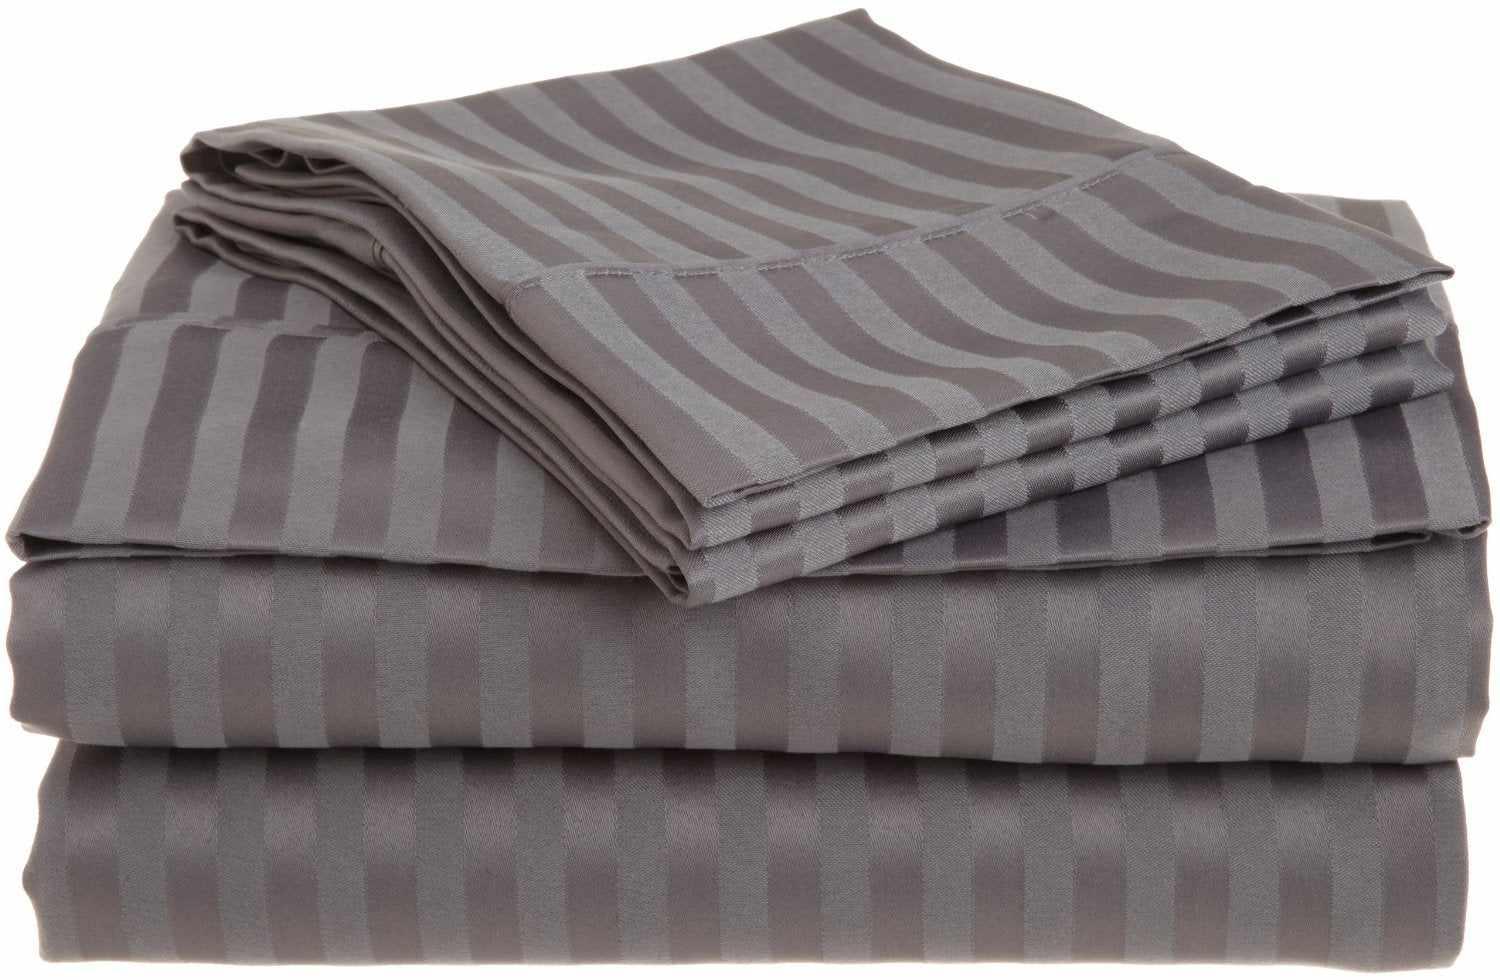  Superior Microfiber Wrinkle Resistant and Breathable Stripe Deep Pocket Bed Sheet Set - Grey